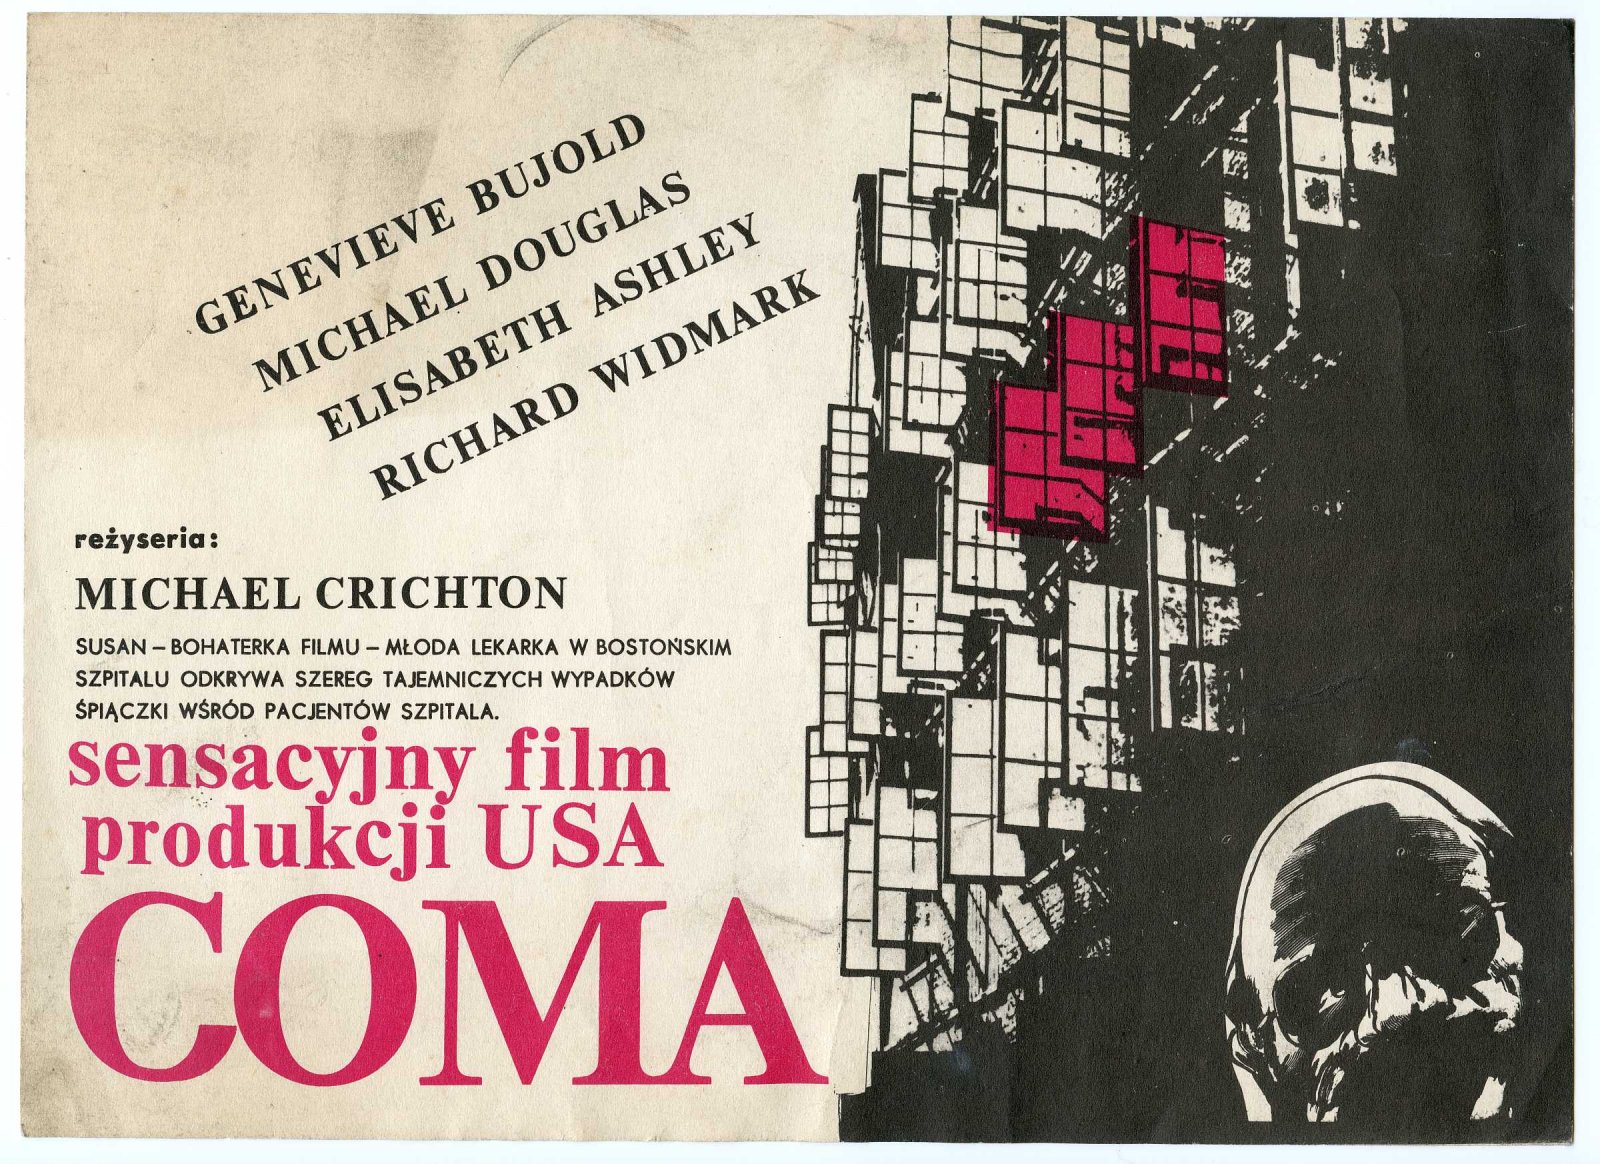 Polski plakat do filmu “Coma”. Zbiory Teatru Starego w Lublinie